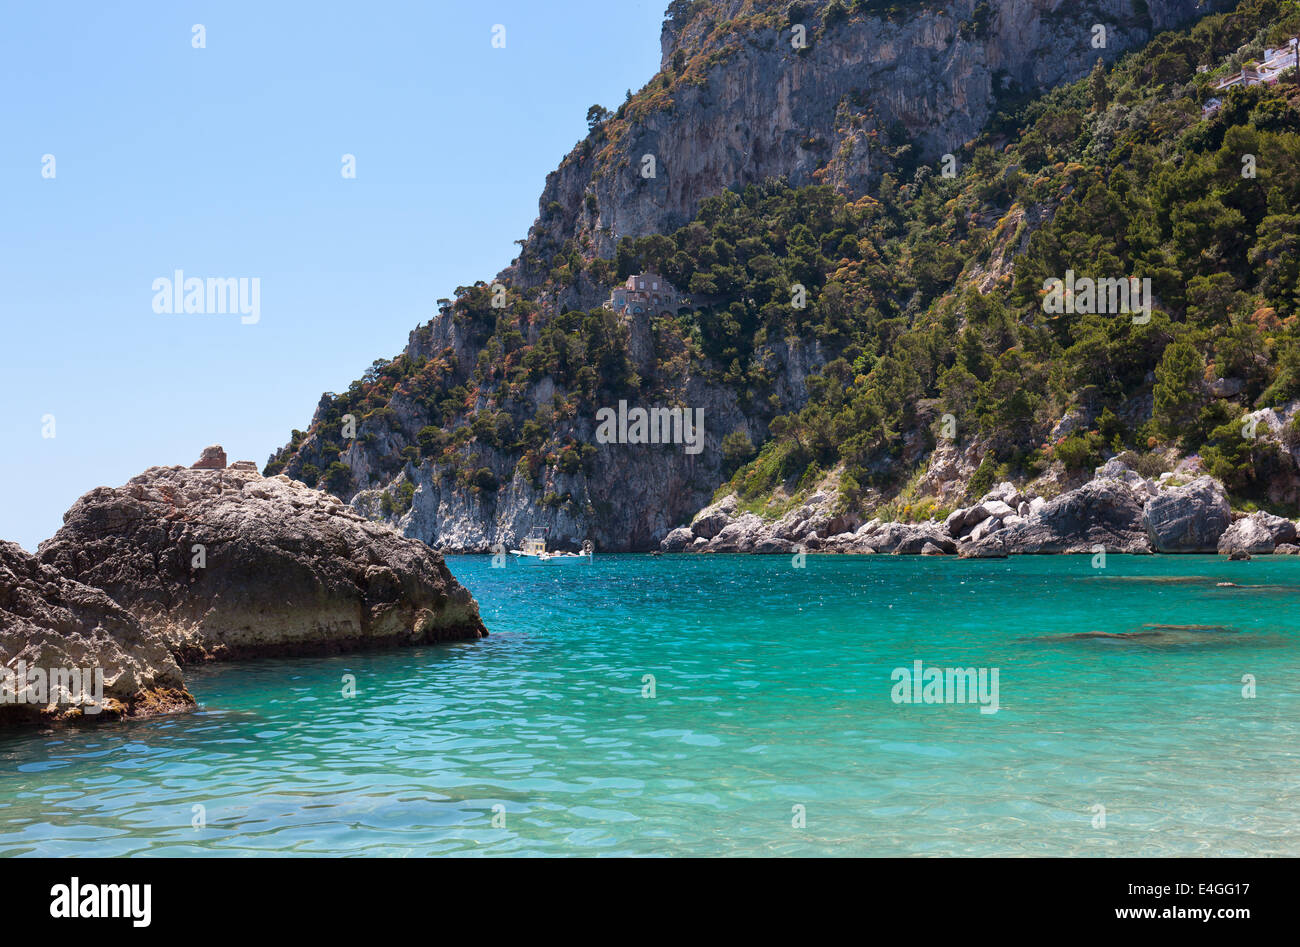 View of Marina Piccola, Island of Capri, Campania, Italy. Stock Photo